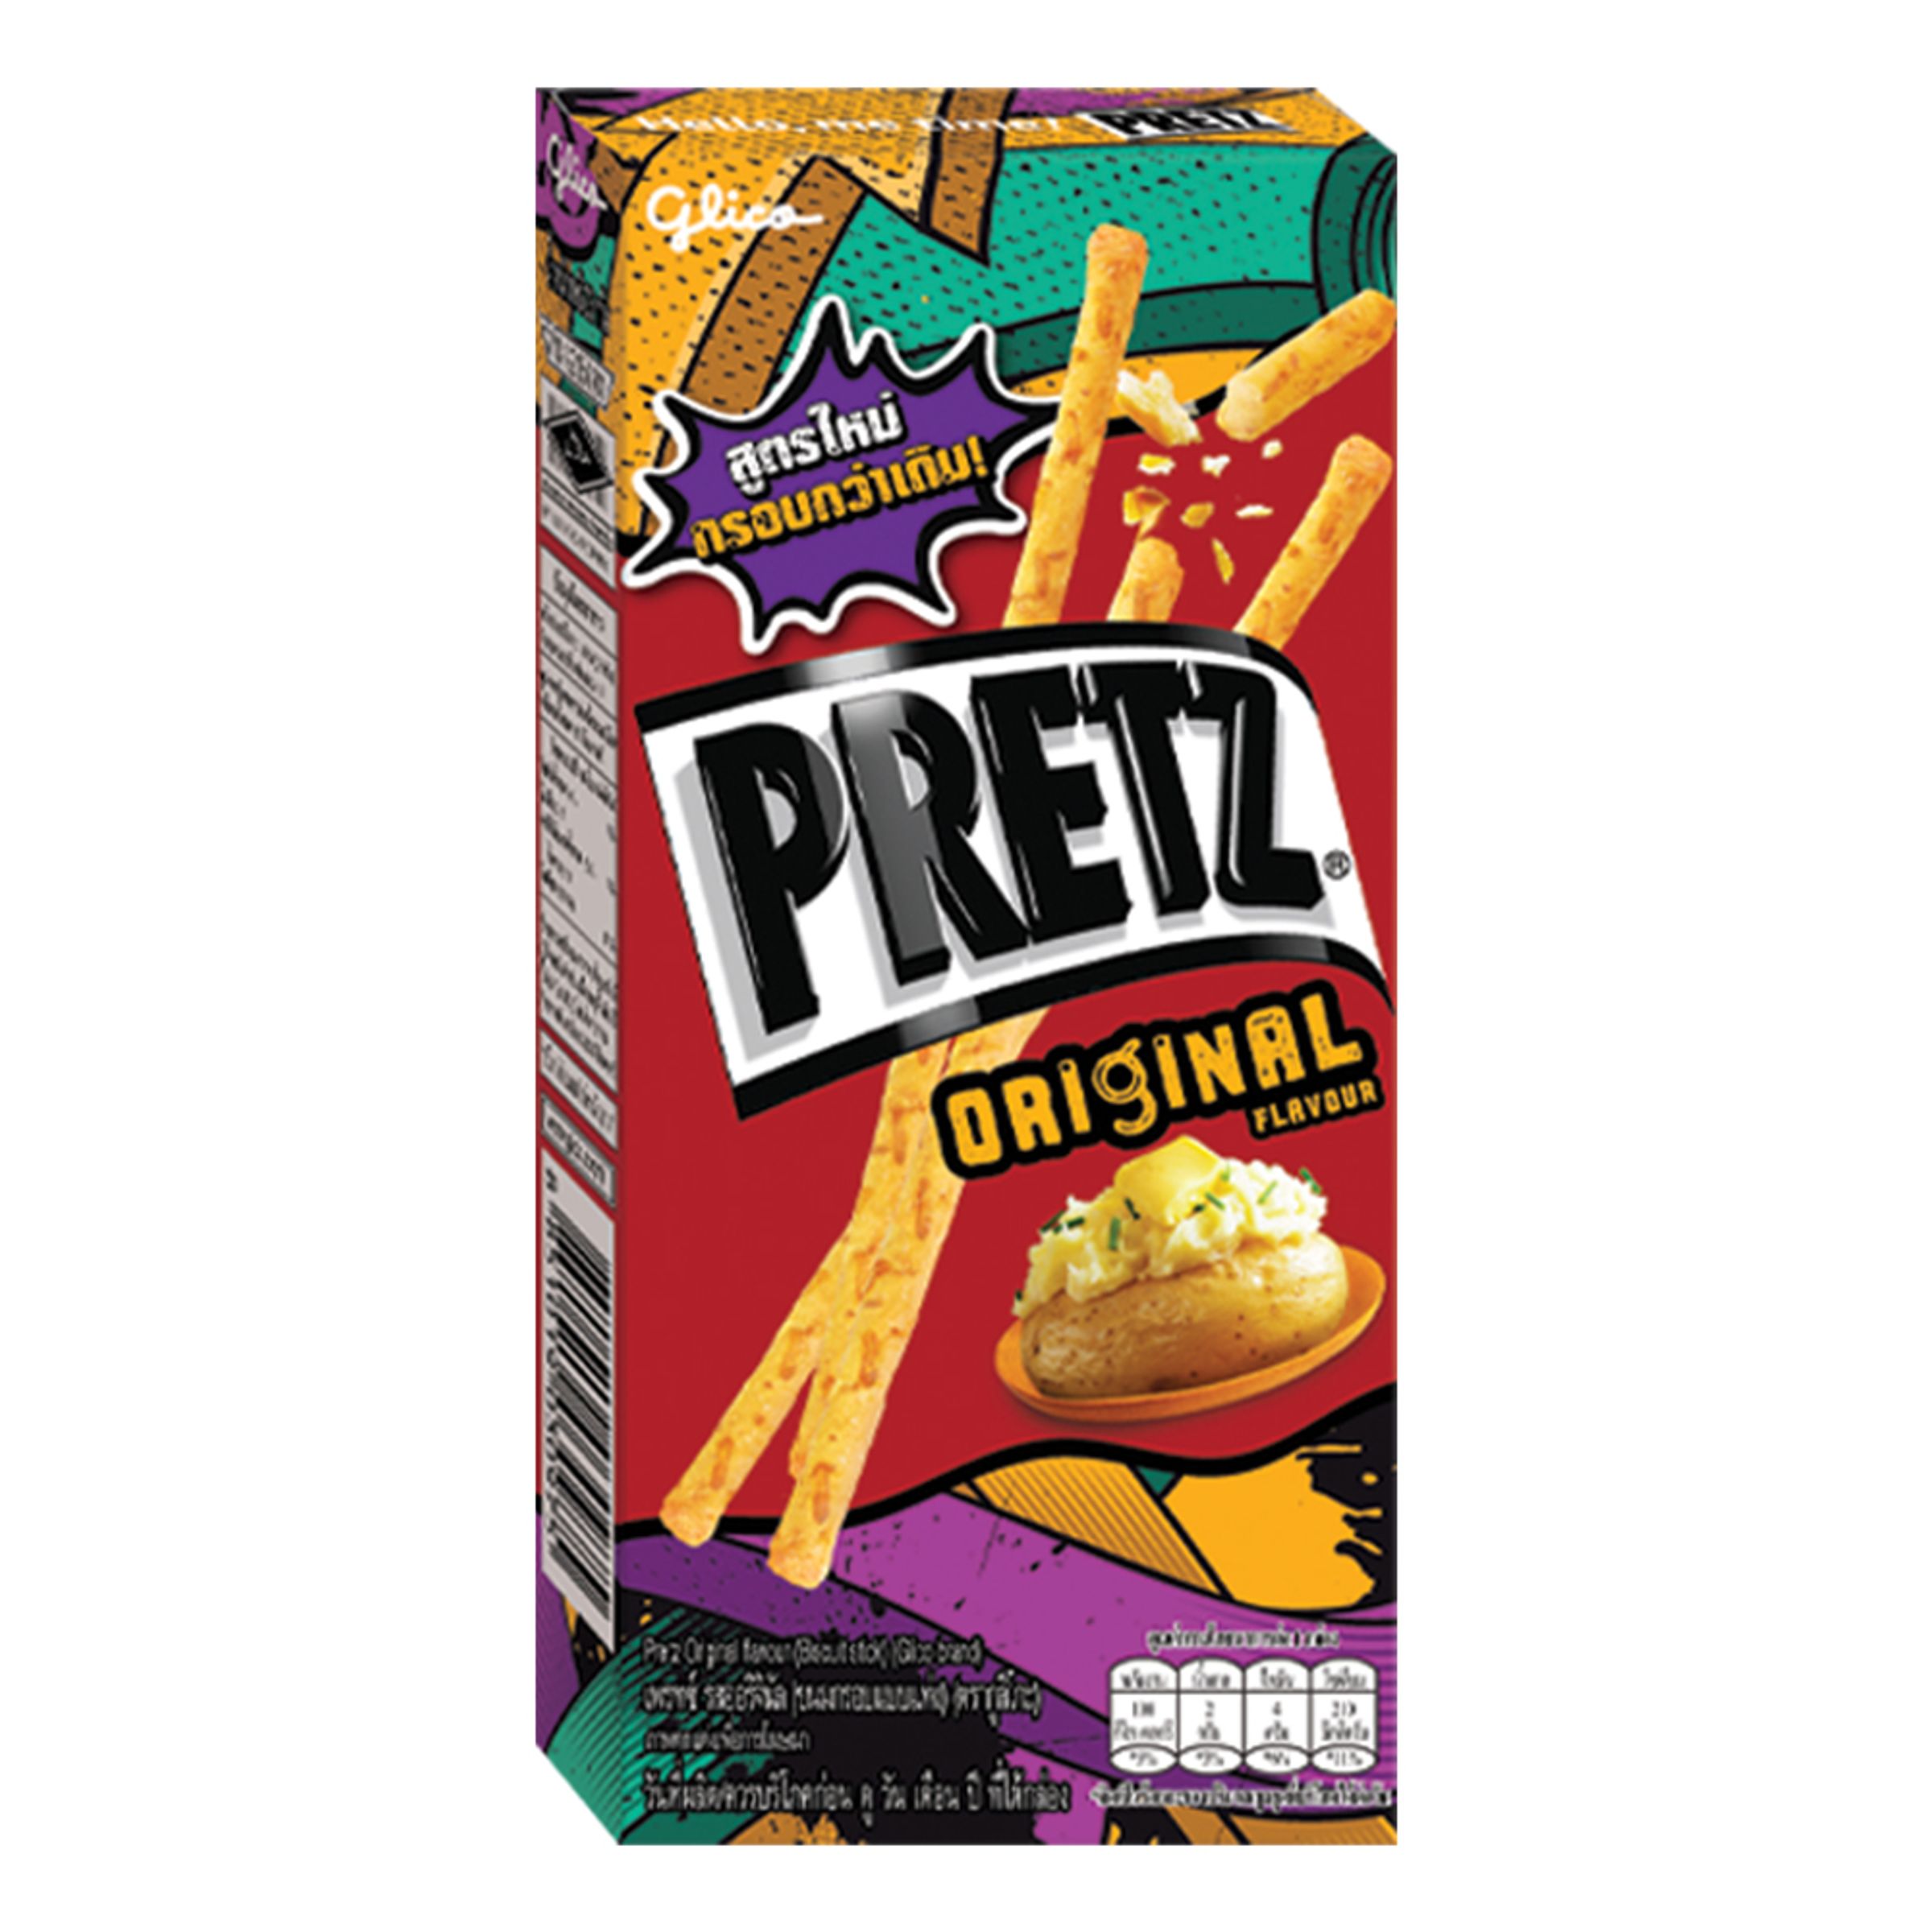 Pretz Original Flavor - 23 gram